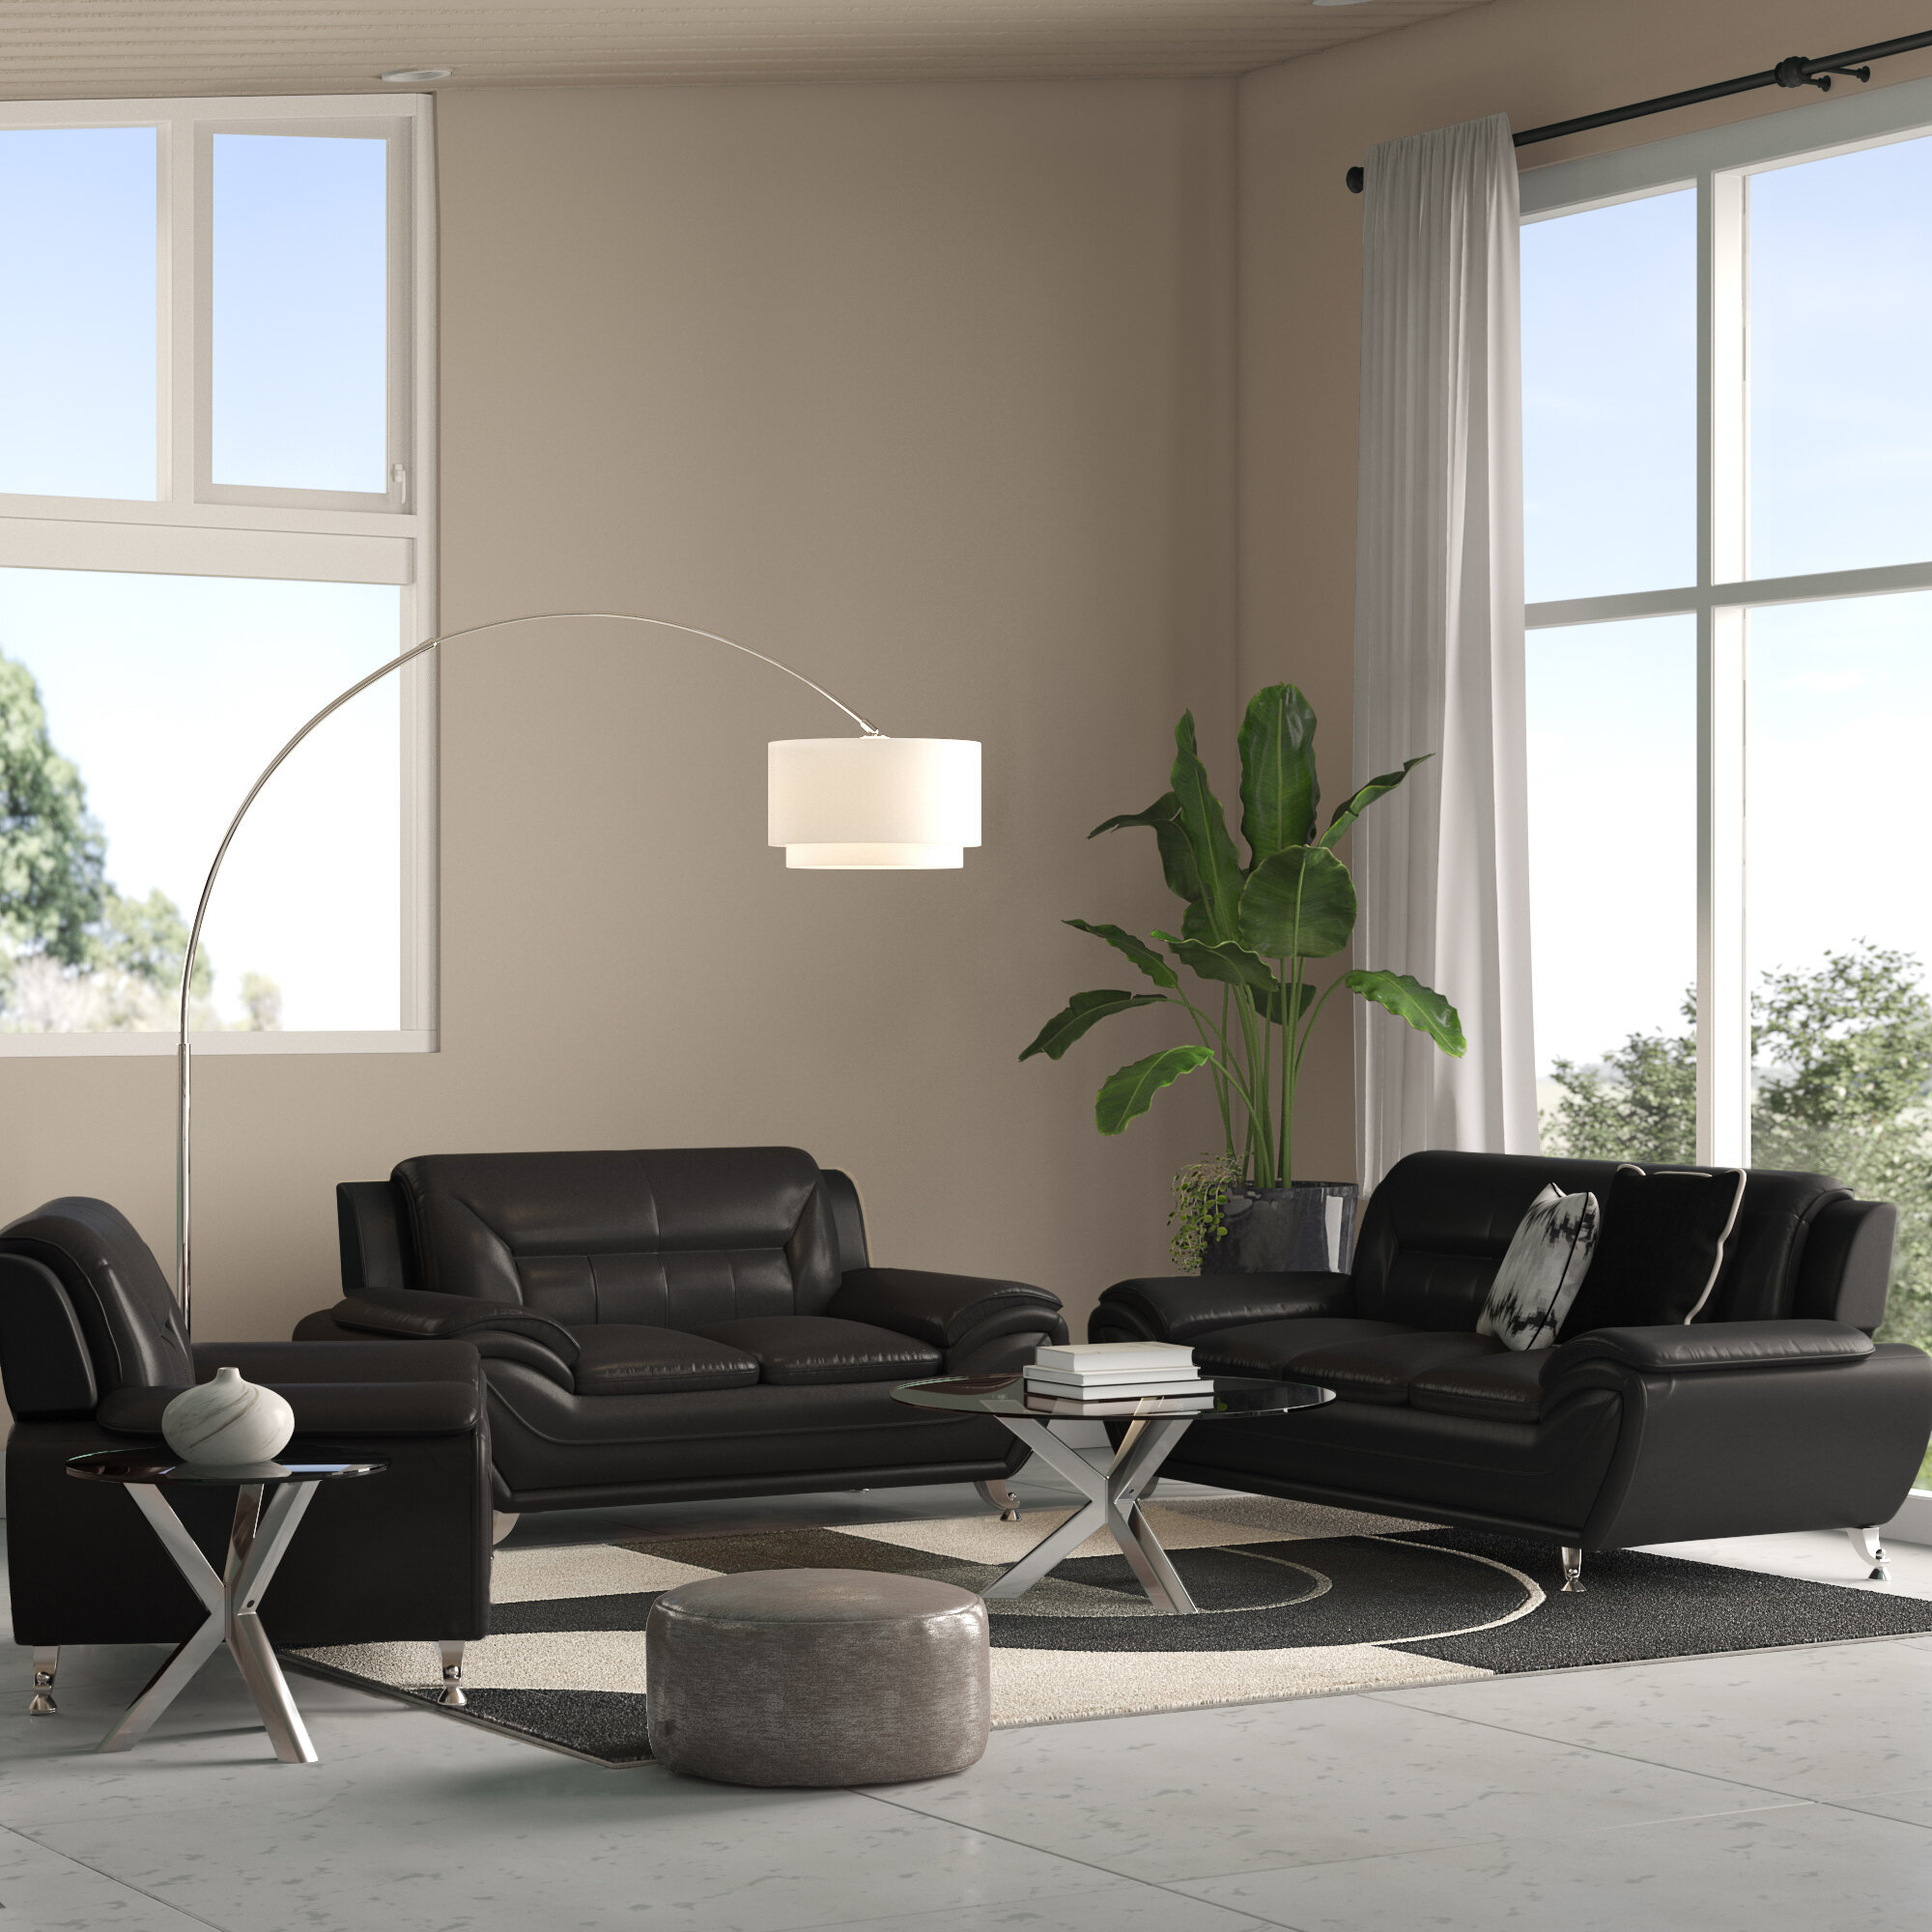 Stcyr 3 Piece Faux Leather Living Room Set